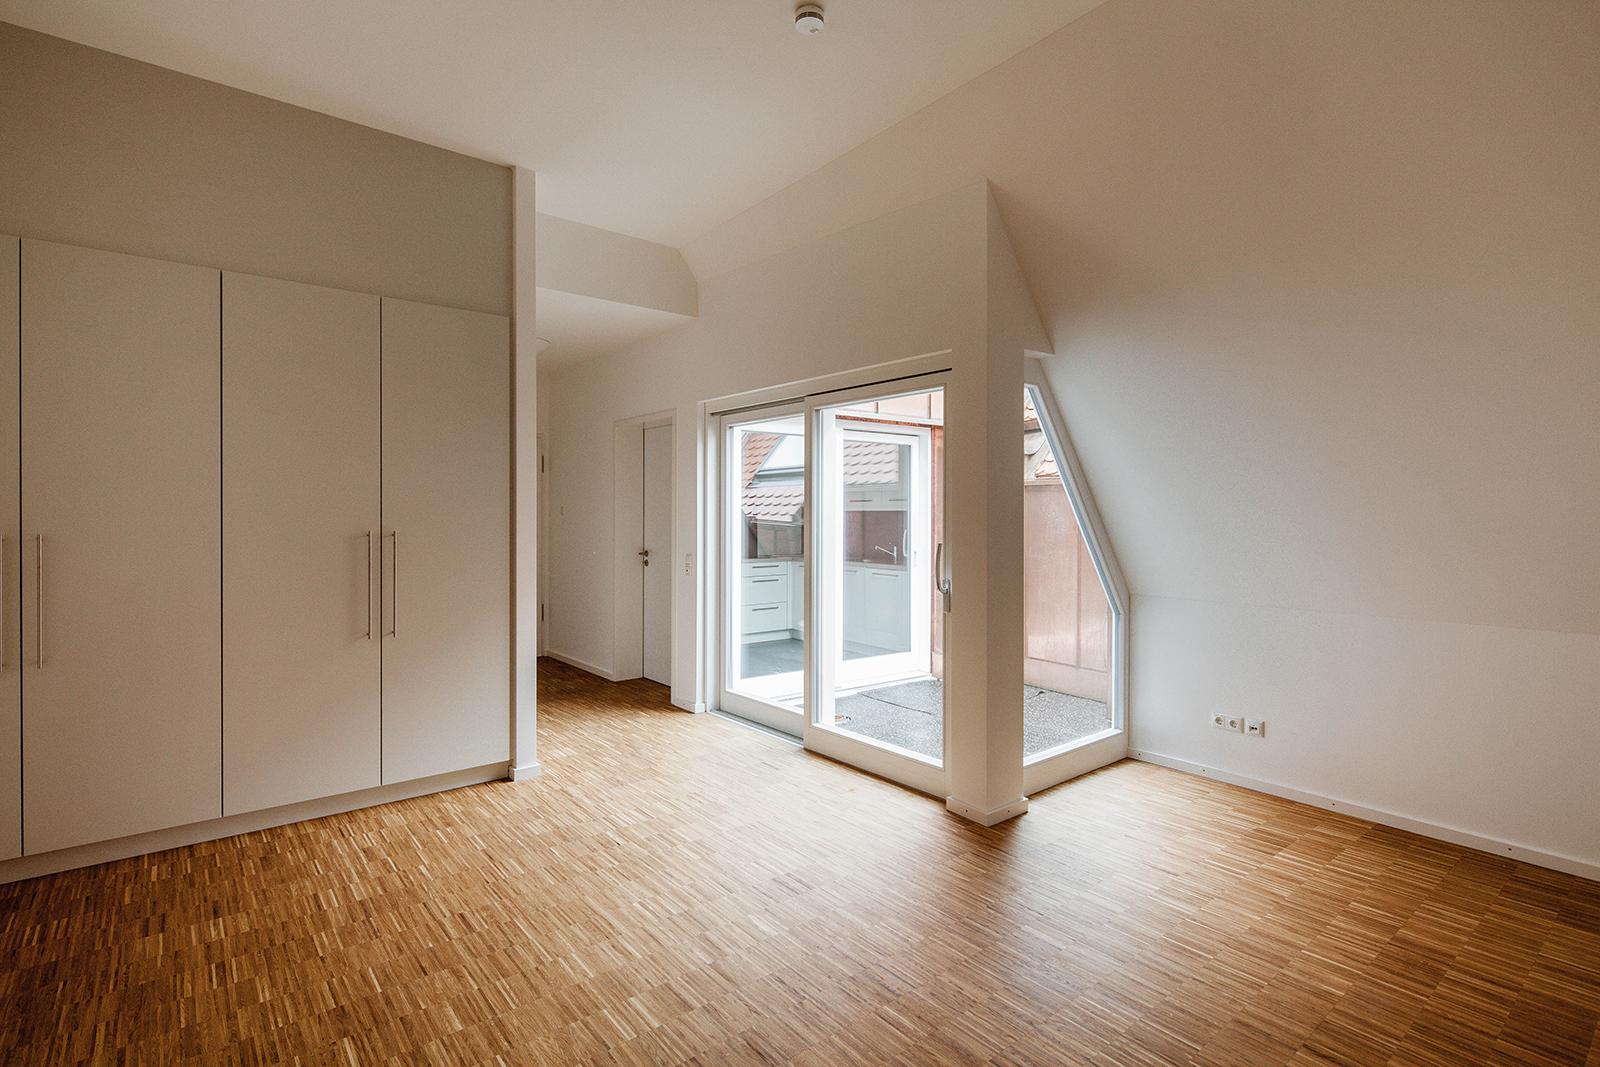 Ein leeres Schlaf- oder Wohnzimmer mit Holzfußboden und weißen Einbauschränken sowie einer kleinen angeschlossenen Loggia.